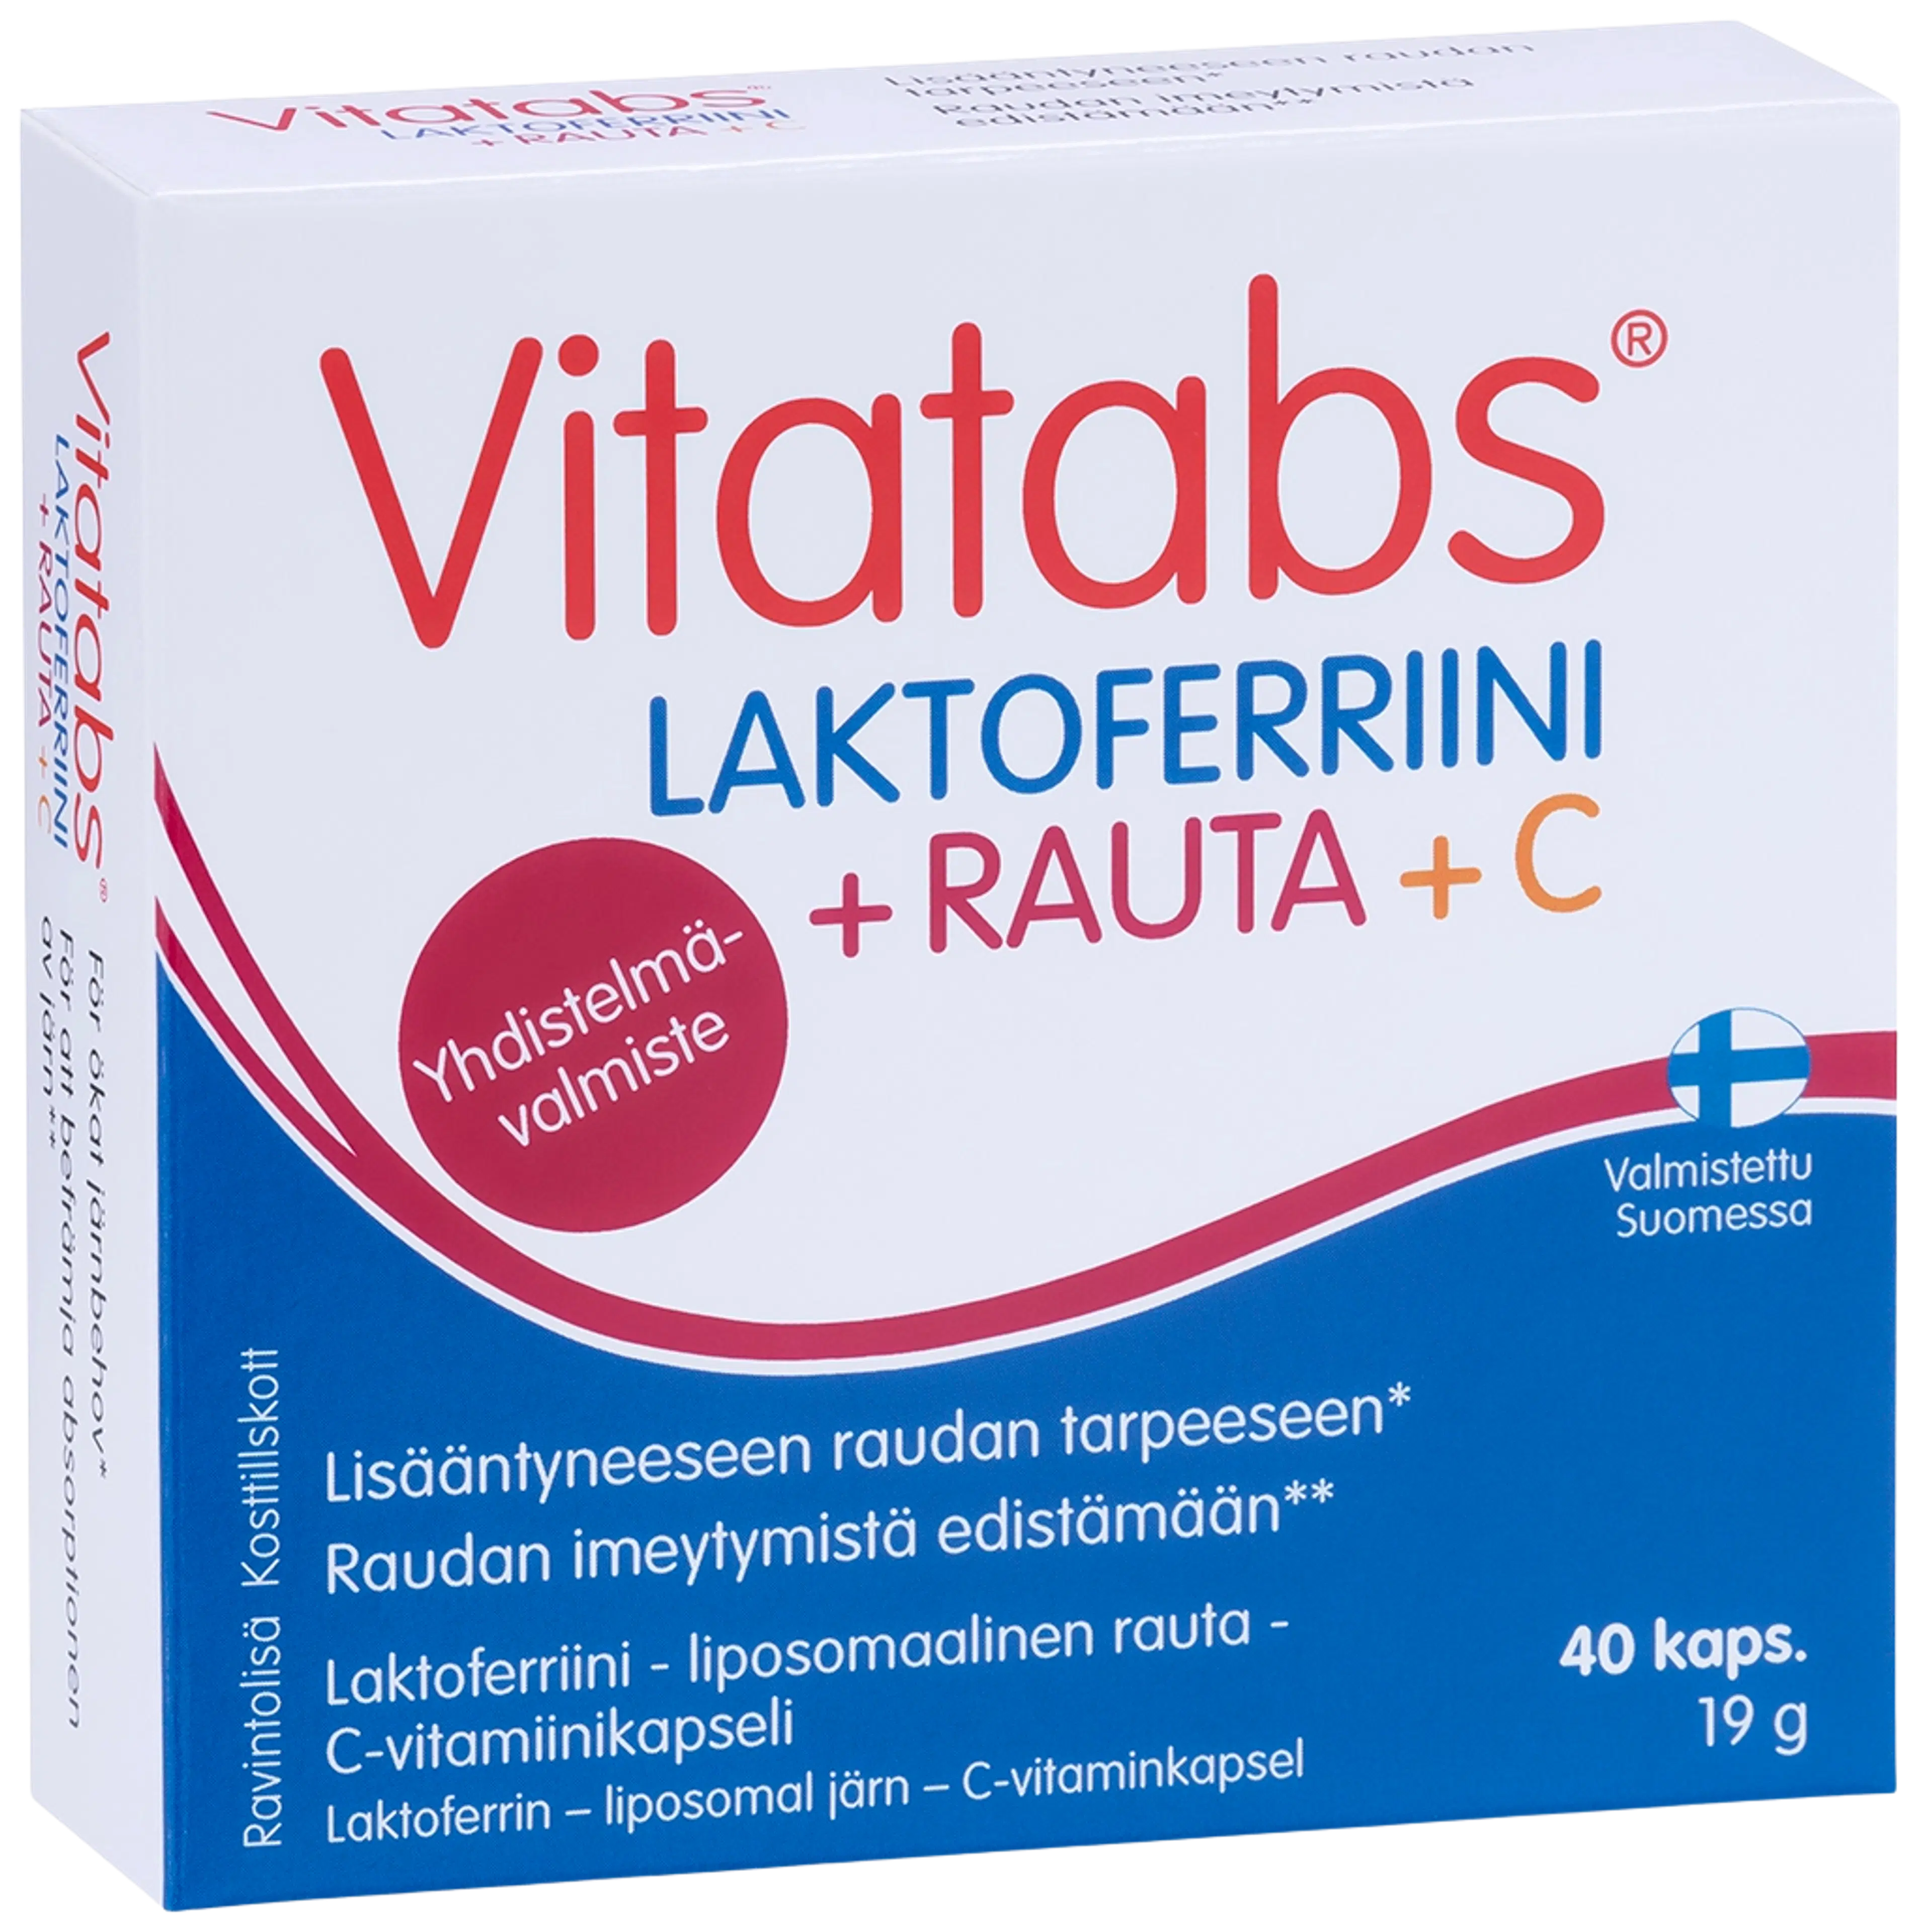 Vitatabs Laktoferriini + Rauta + C Laktoferriini-rauta-c-vitamiinikapseli 40 kaps